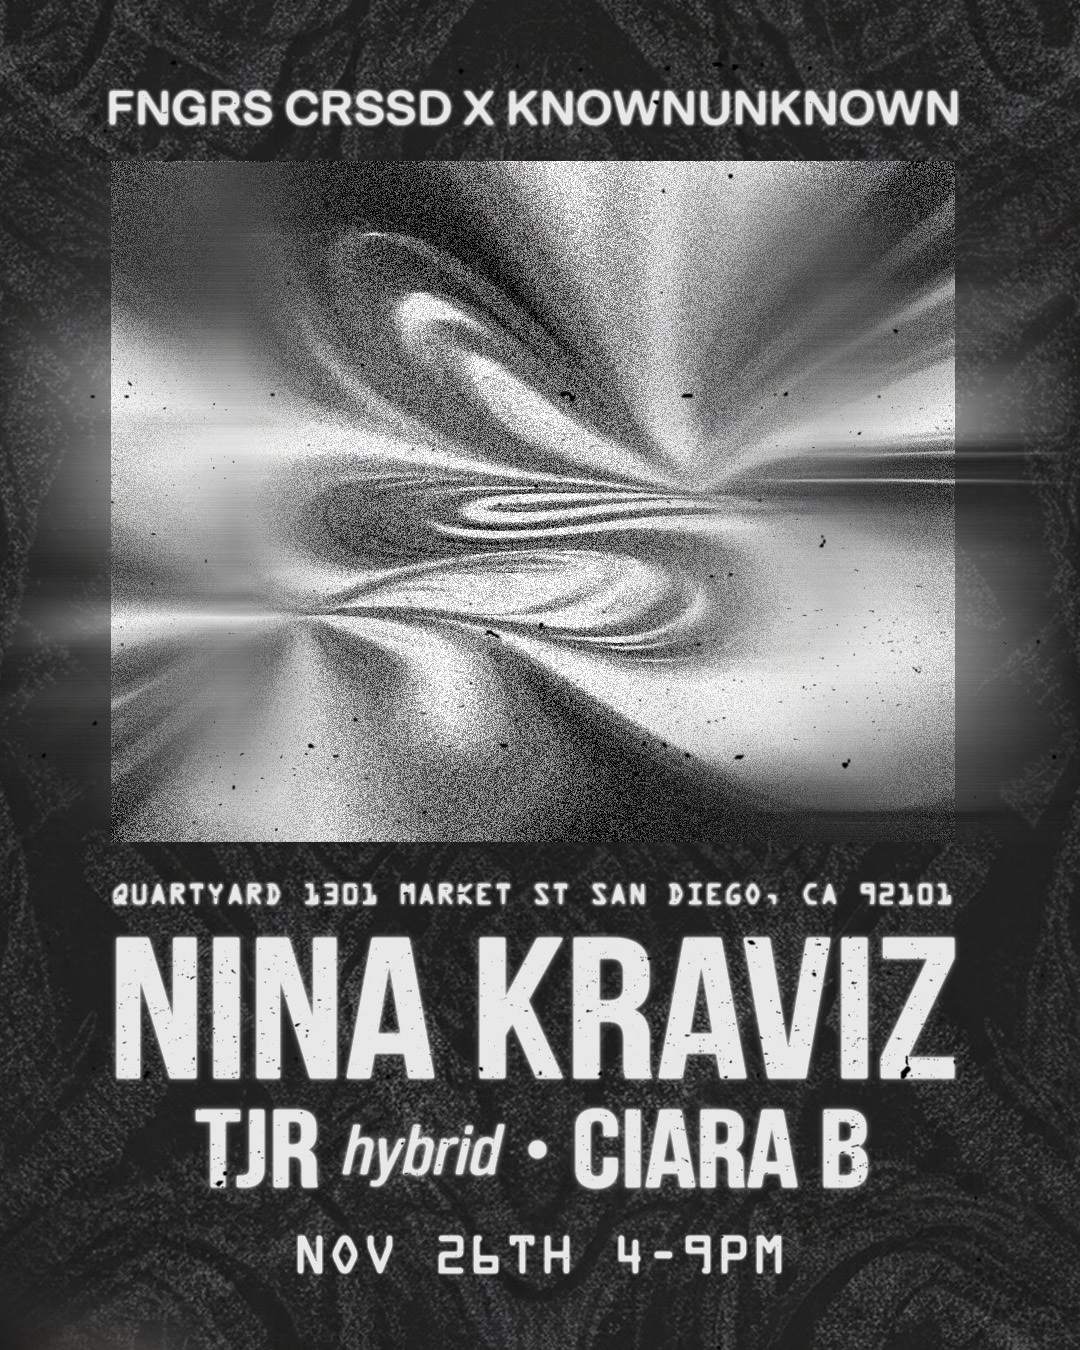 FNGRS CRSSD x knownunknown present Nina Kraviz + TJR - Página frontal